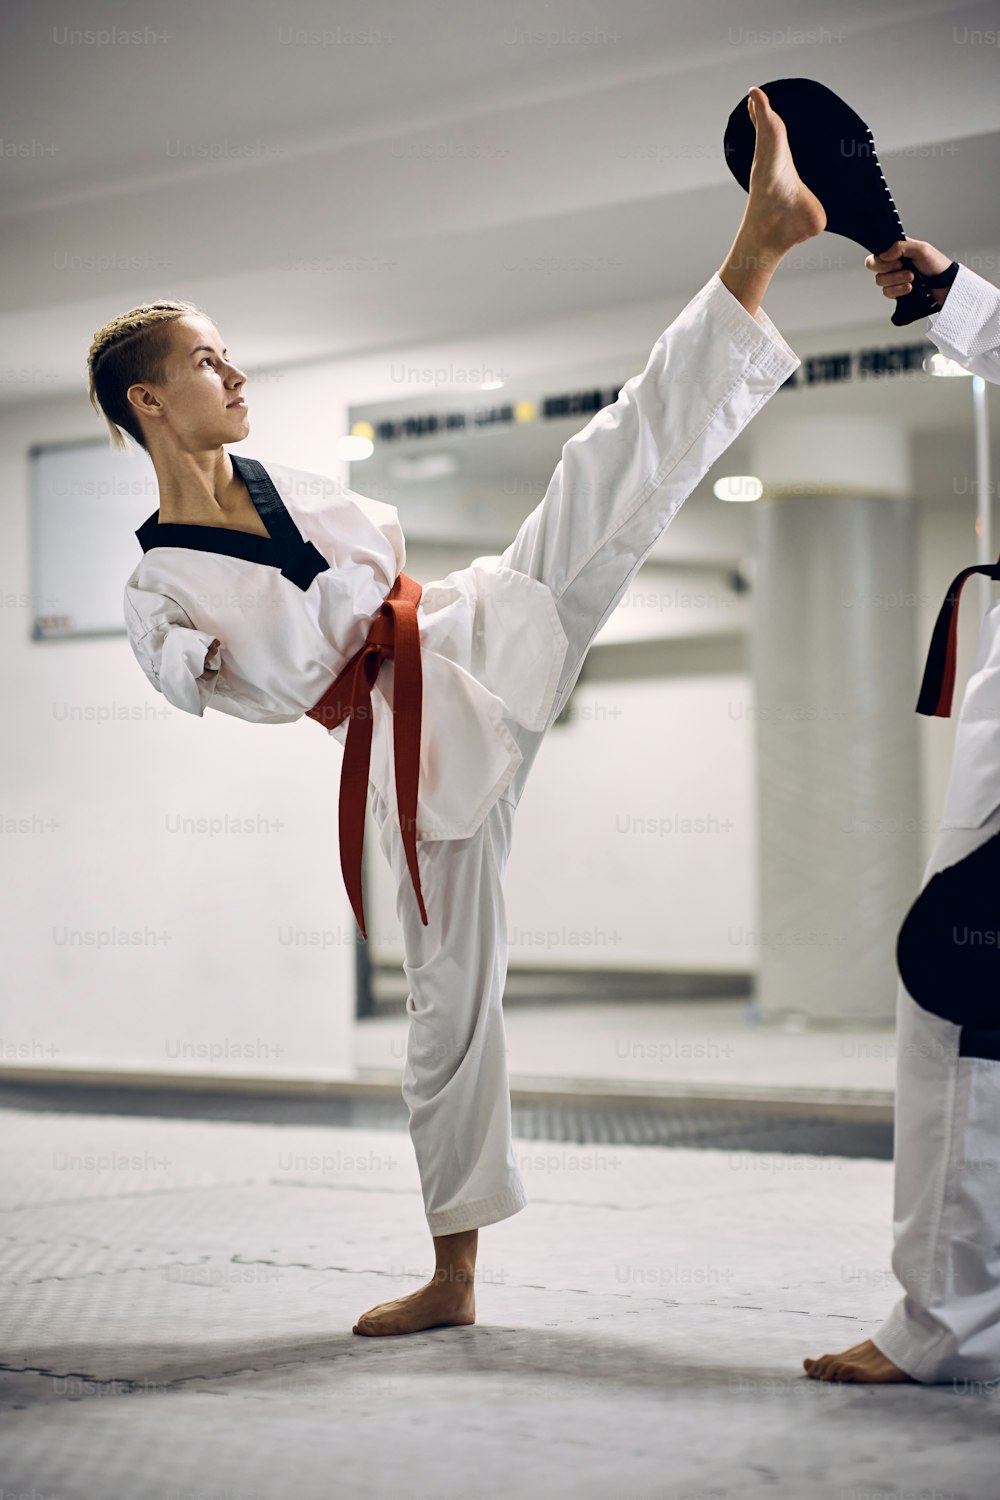 Entschlossene Taekwondo-Kämpferin mit Behinderung, die mit ihrem Trainer im Fitnessstudio High Kick übt.